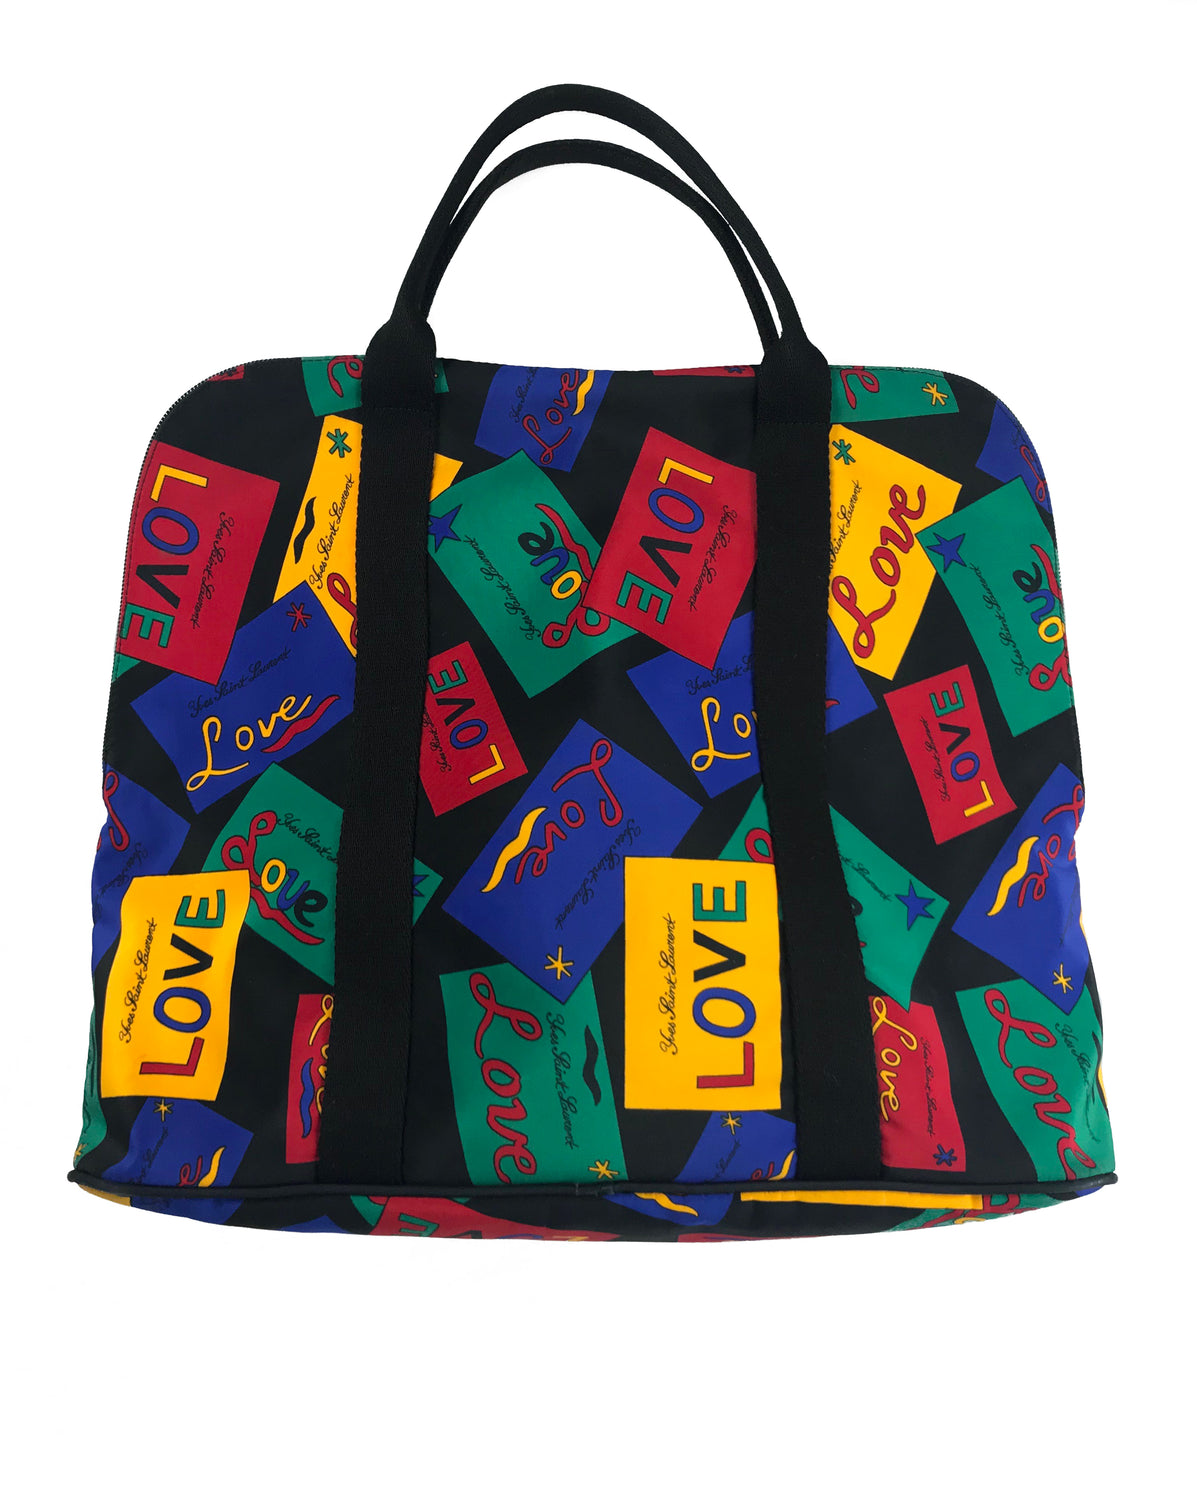 Yves Saint Laurent 1980s Logo Bag